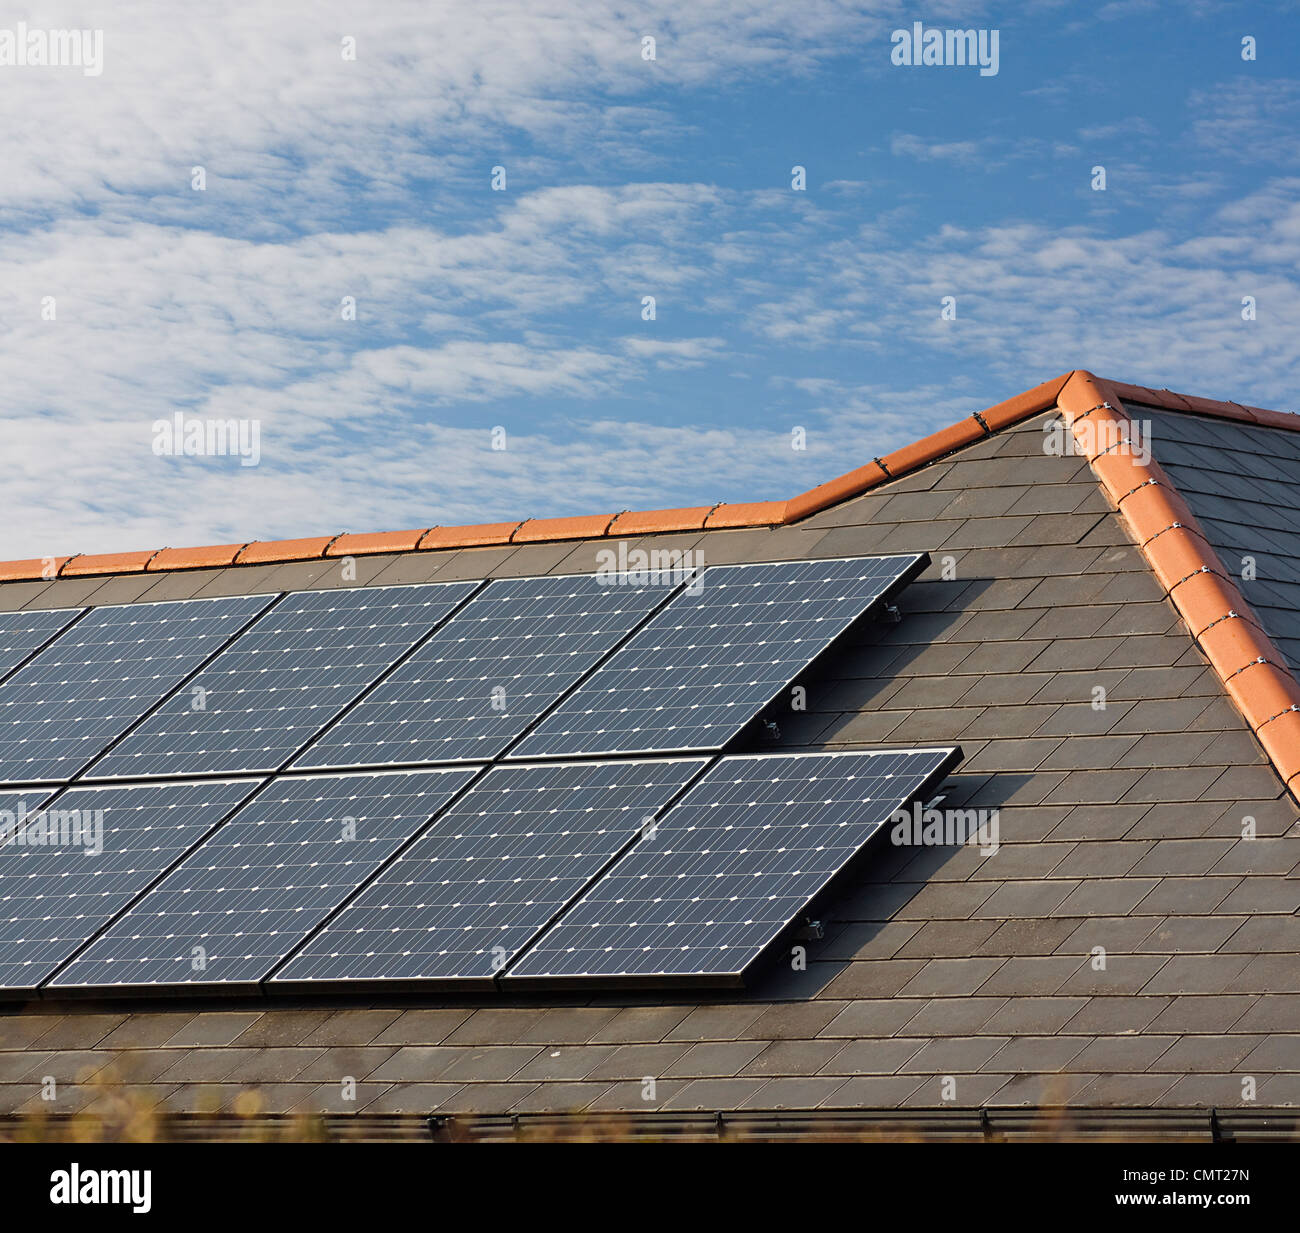 Panneaux solaires photovoltaïques montés sur un toit en ardoise de résidence ou maison privée Banque D'Images